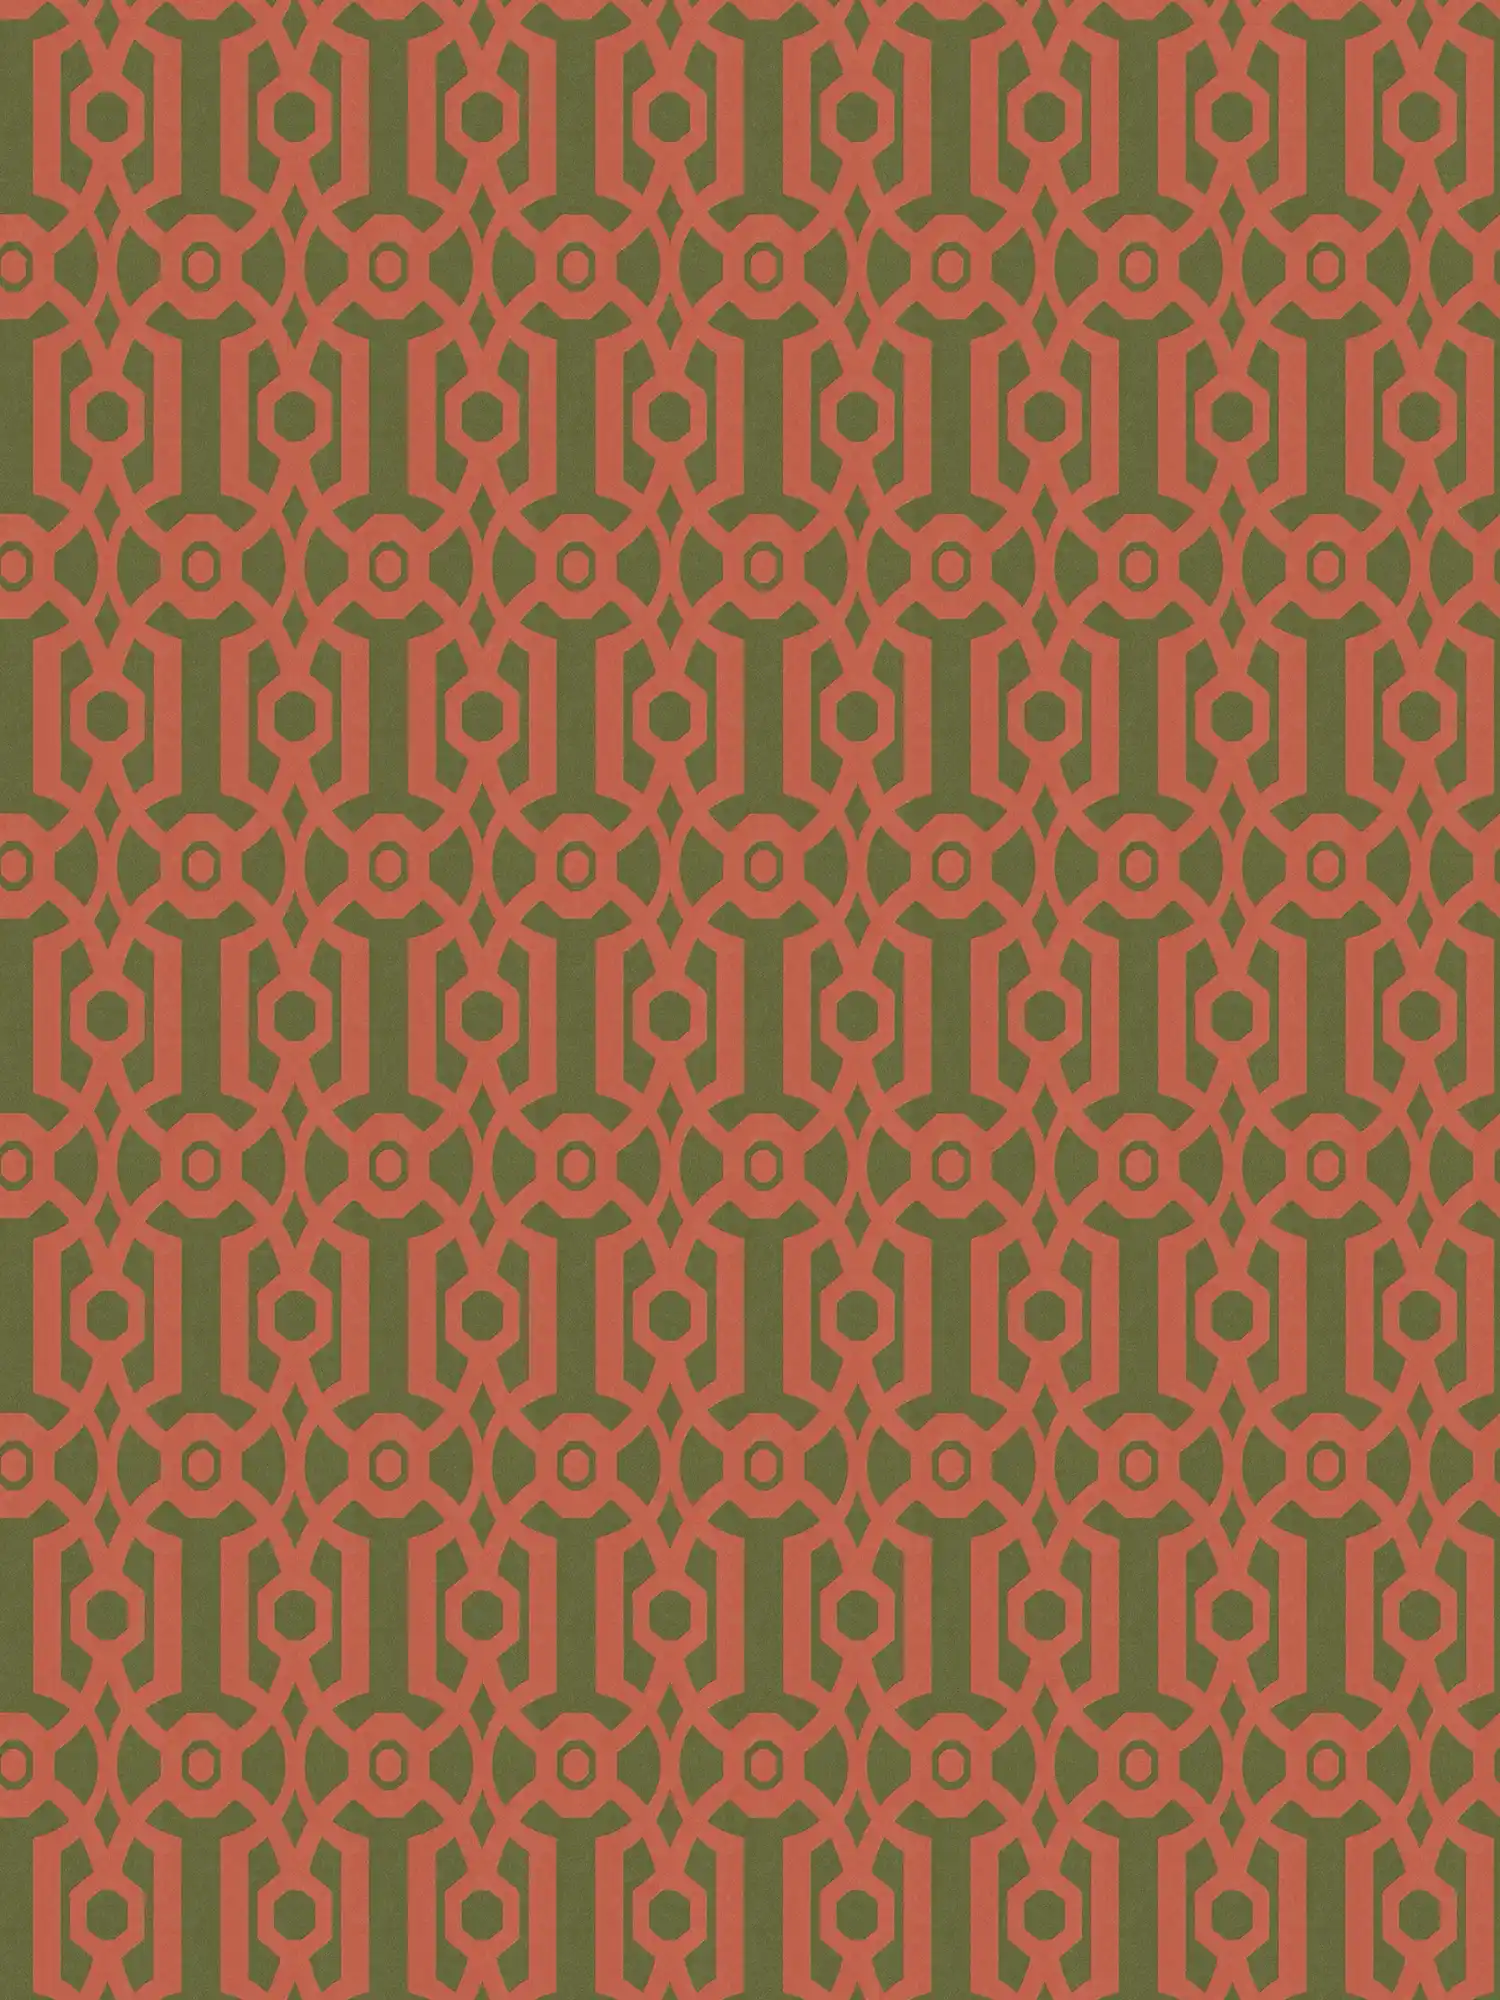 Vliesbehang met grafisch patroon in Engelse stijl - oranje, groen
